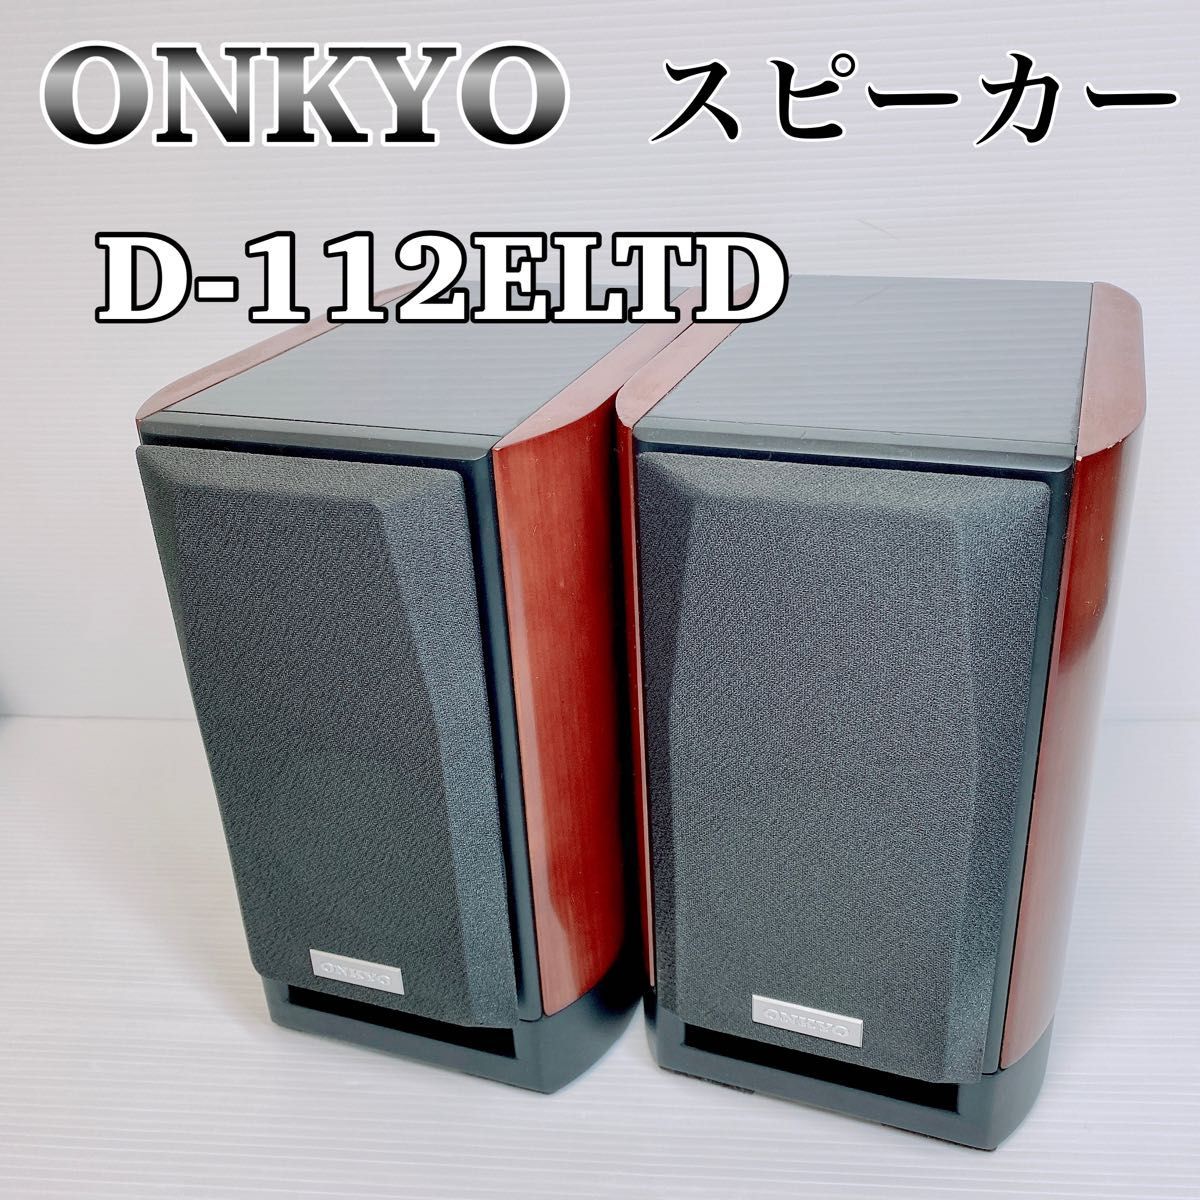 ONKYO D-112E LTD リミテッドモデル スピーカーシステム 箱付き-